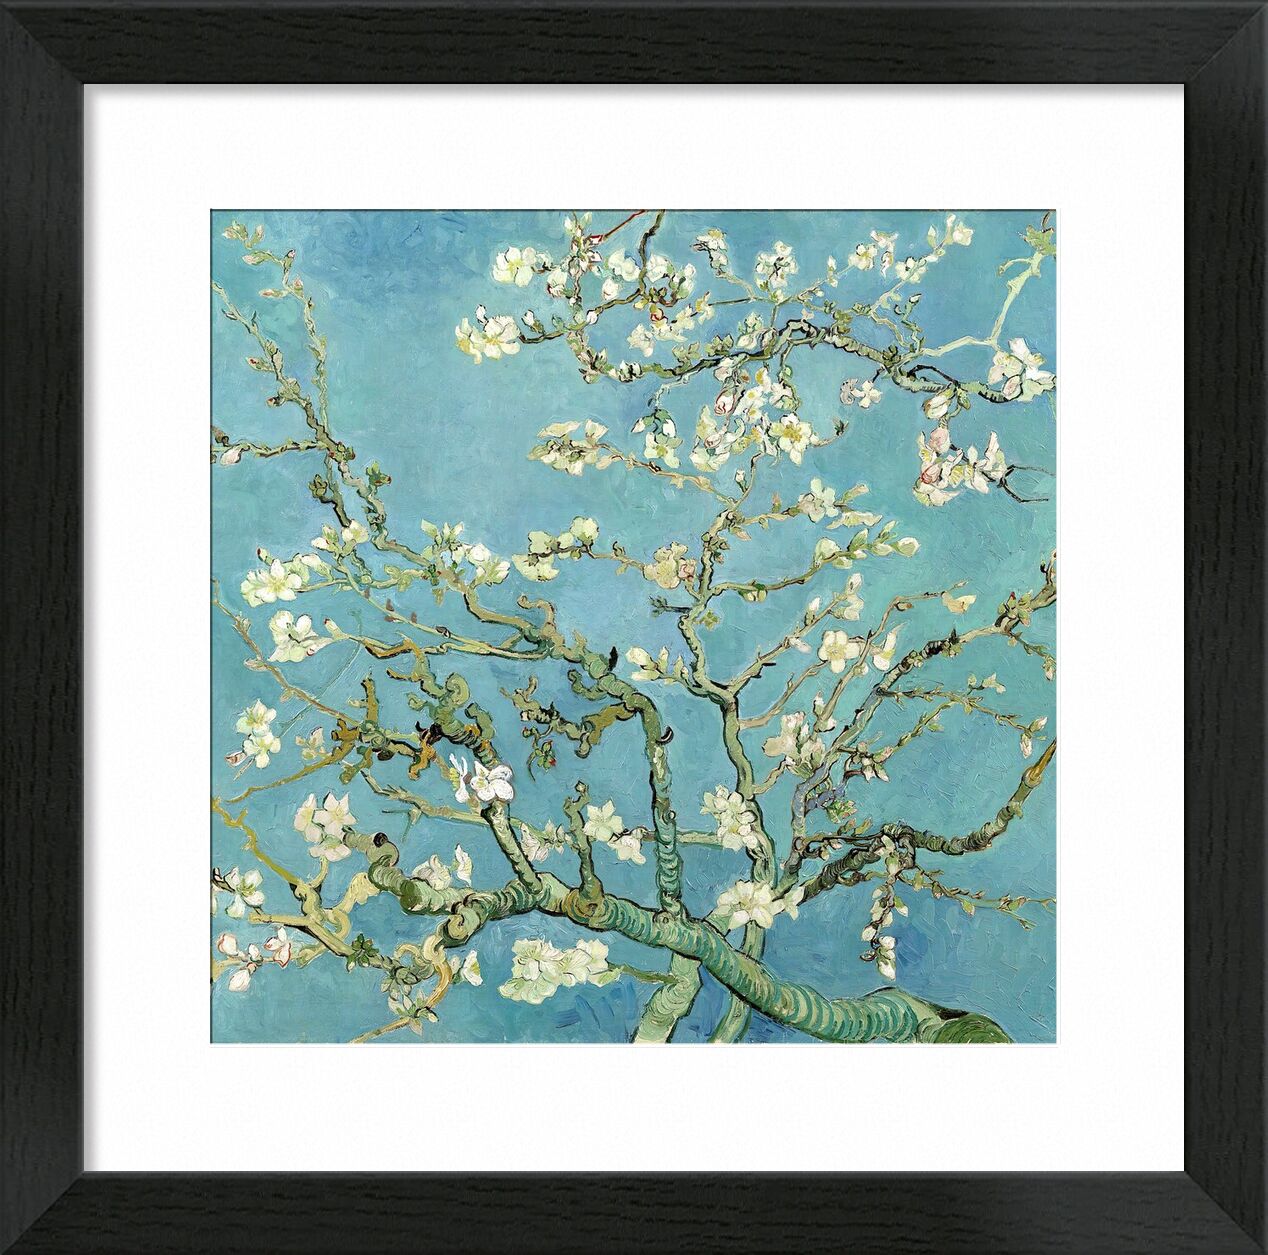 Mandelblüte, Saint-Rémy - VINCENT VAN GOGH 1890 von Bildende Kunst, Prodi Art, blühender Baum, VINCENT VAN GOGH, Natur, Blumen, Ast, Baum, Malerei